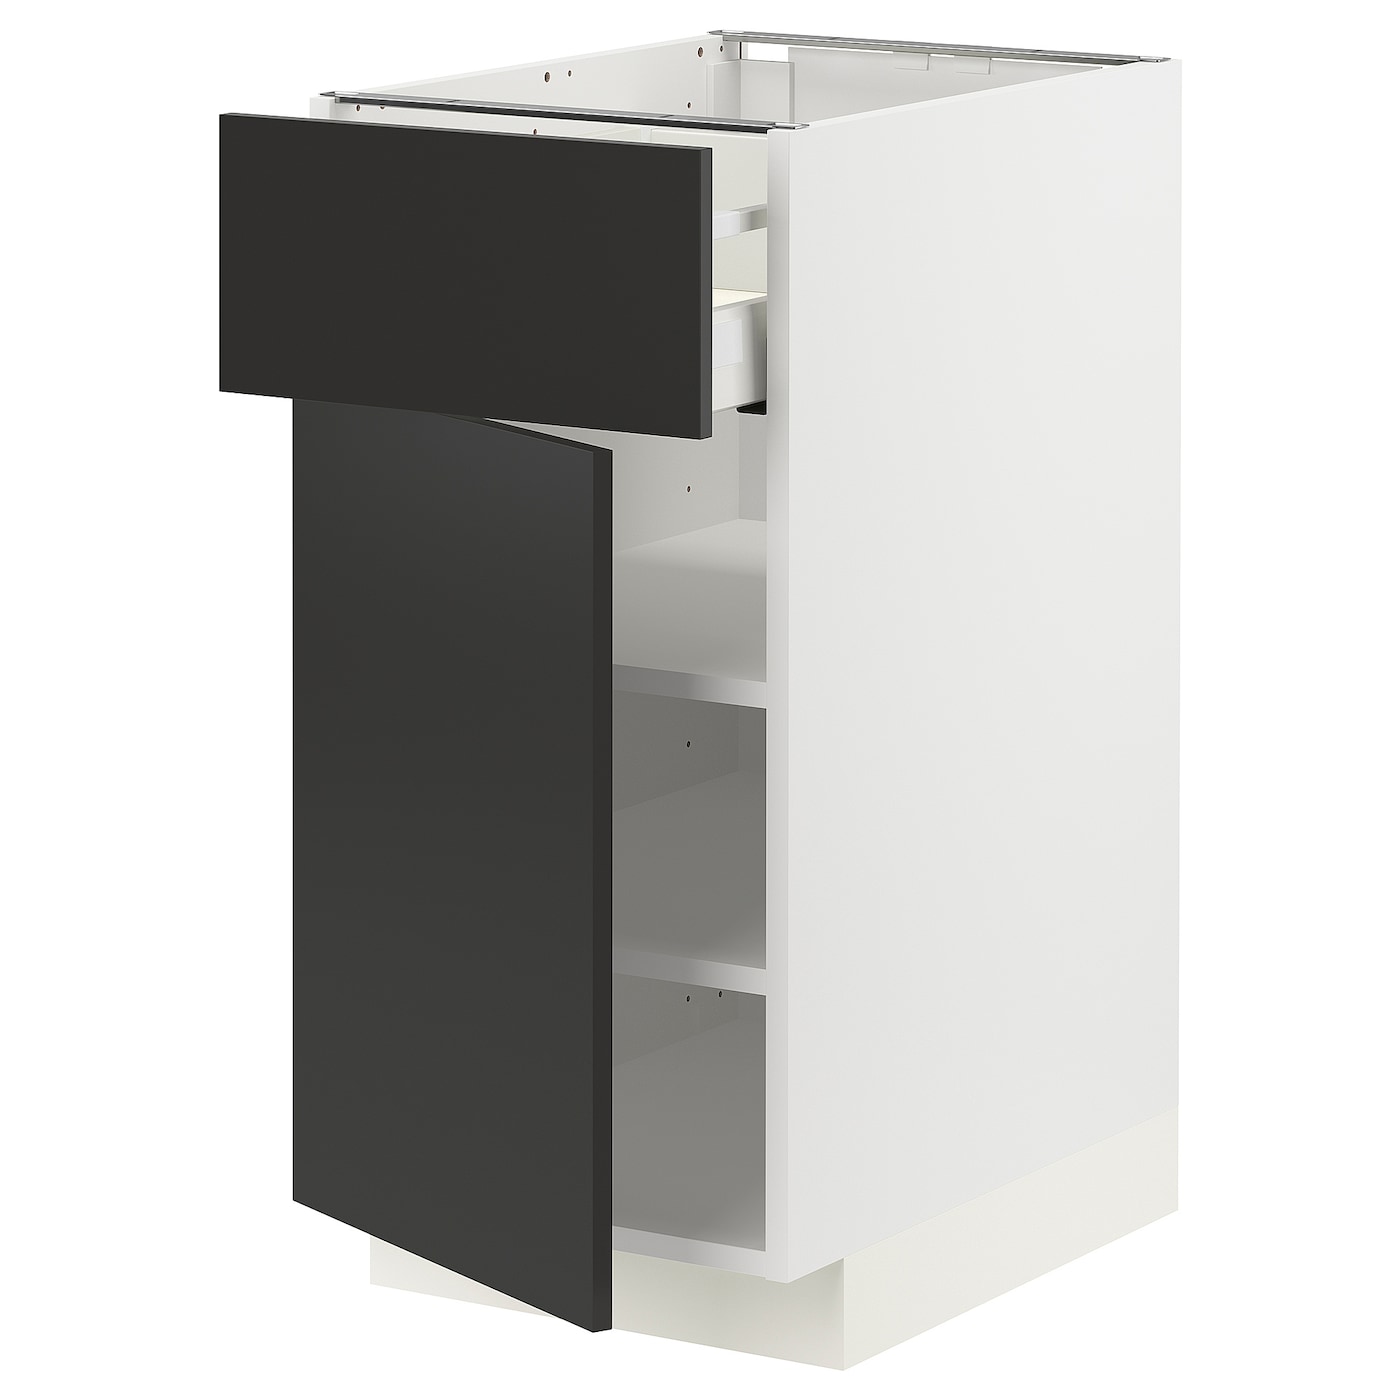 Напольный кухонный шкаф  - IKEA METOD MAXIMERA, 88x62x40см, белый/черный, МЕТОД МАКСИМЕРА ИКЕА